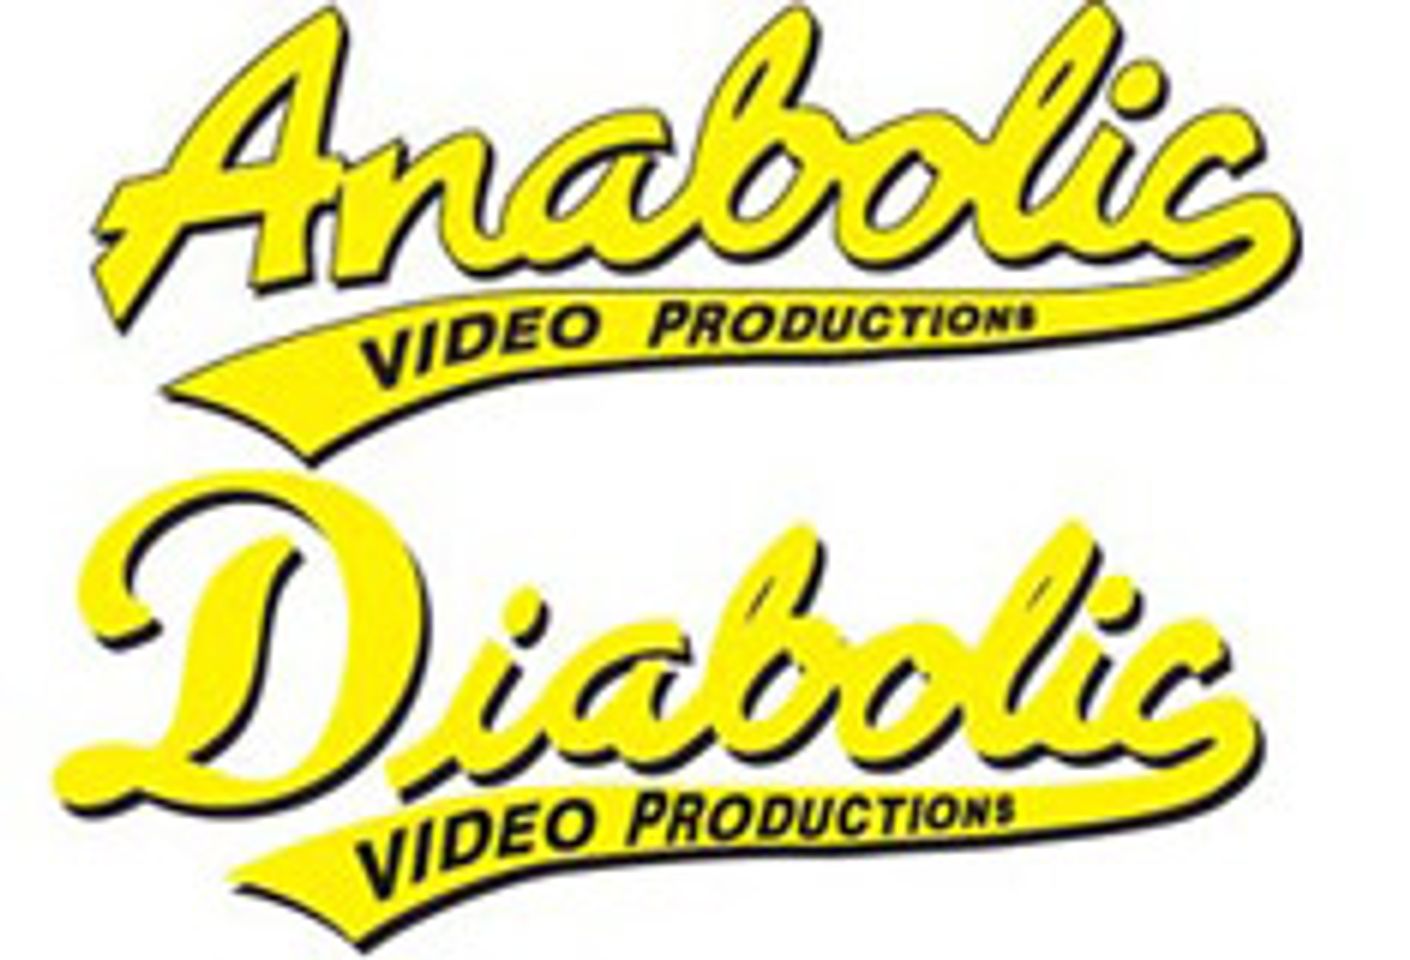 Anabolic and Diabolic Merge Websites